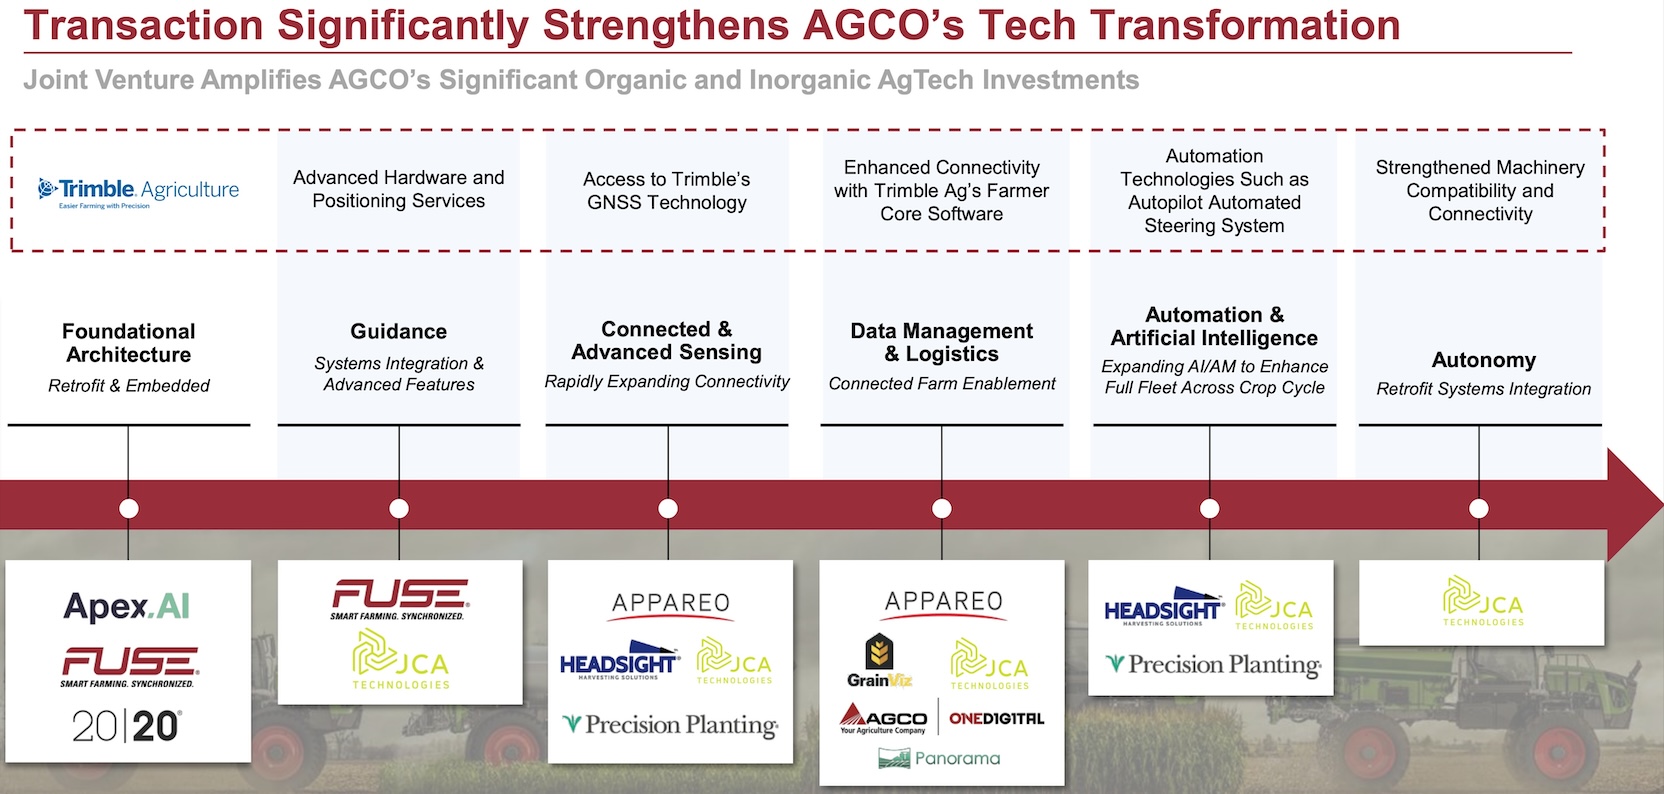 Potenciais vantagens para a AGCO advindas de sua "joint venture" com a Trimble